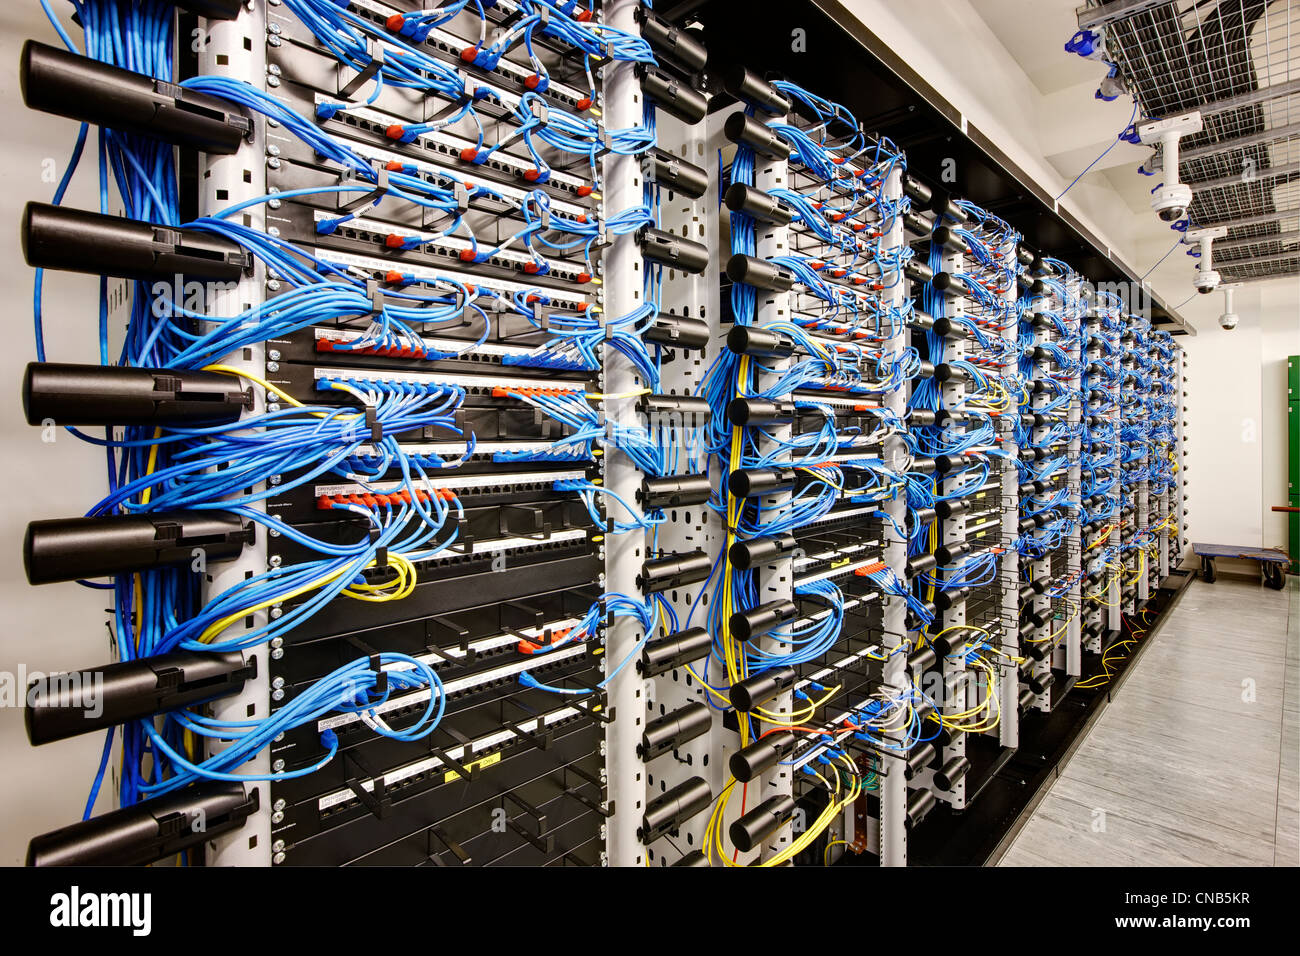 Muro de cableado de red banco azul sala de ordenadores Foto de stock